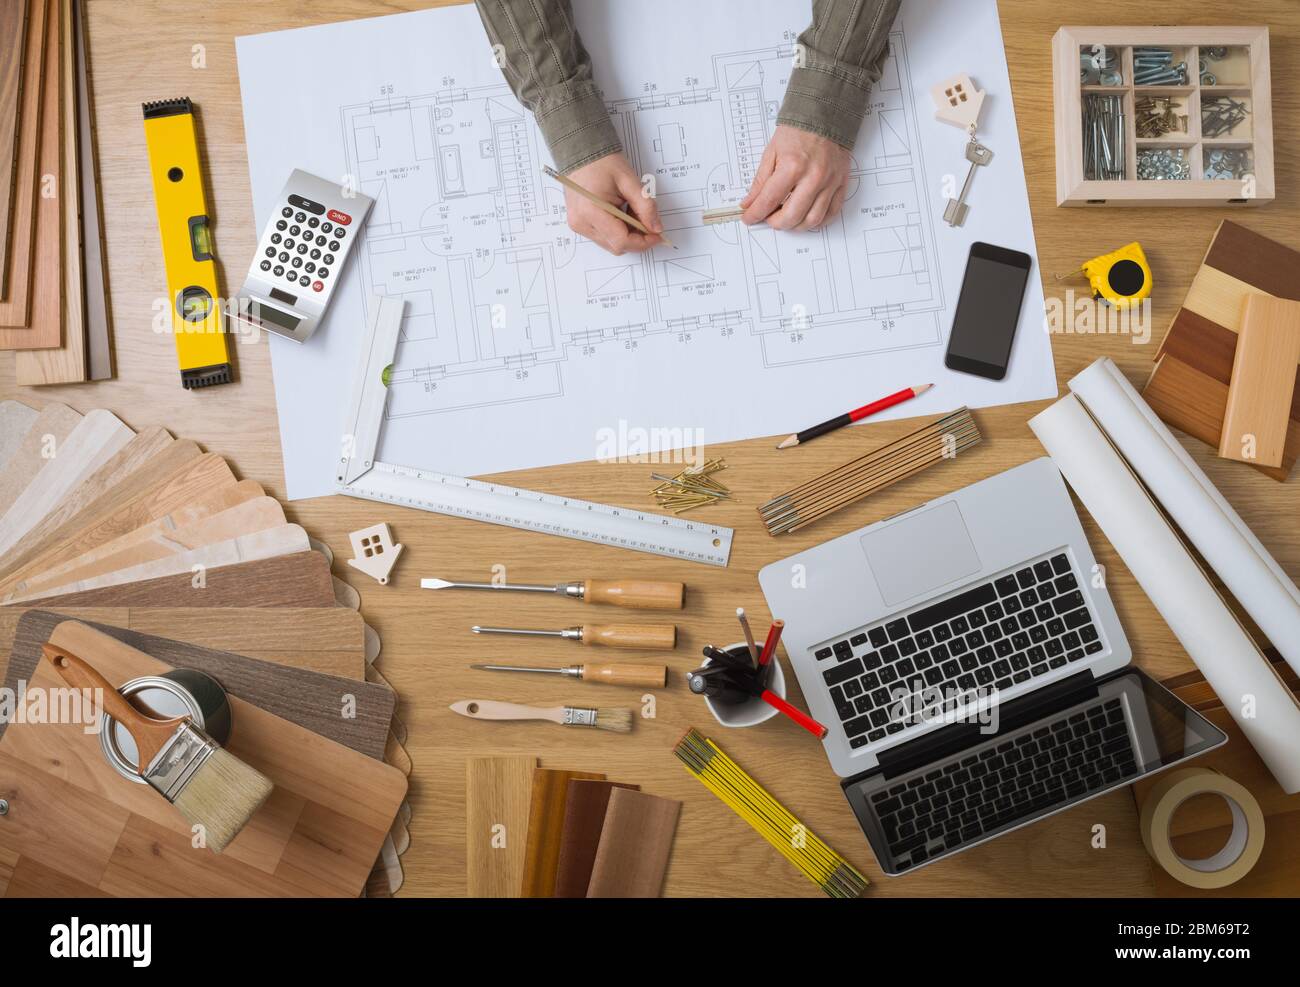 Construcción ingeniero y arquitecto's desk con proyectos de vivienda, ordenador portátil, herramientas y madera vista superior, muestras de dibujo manos macho Foto de stock